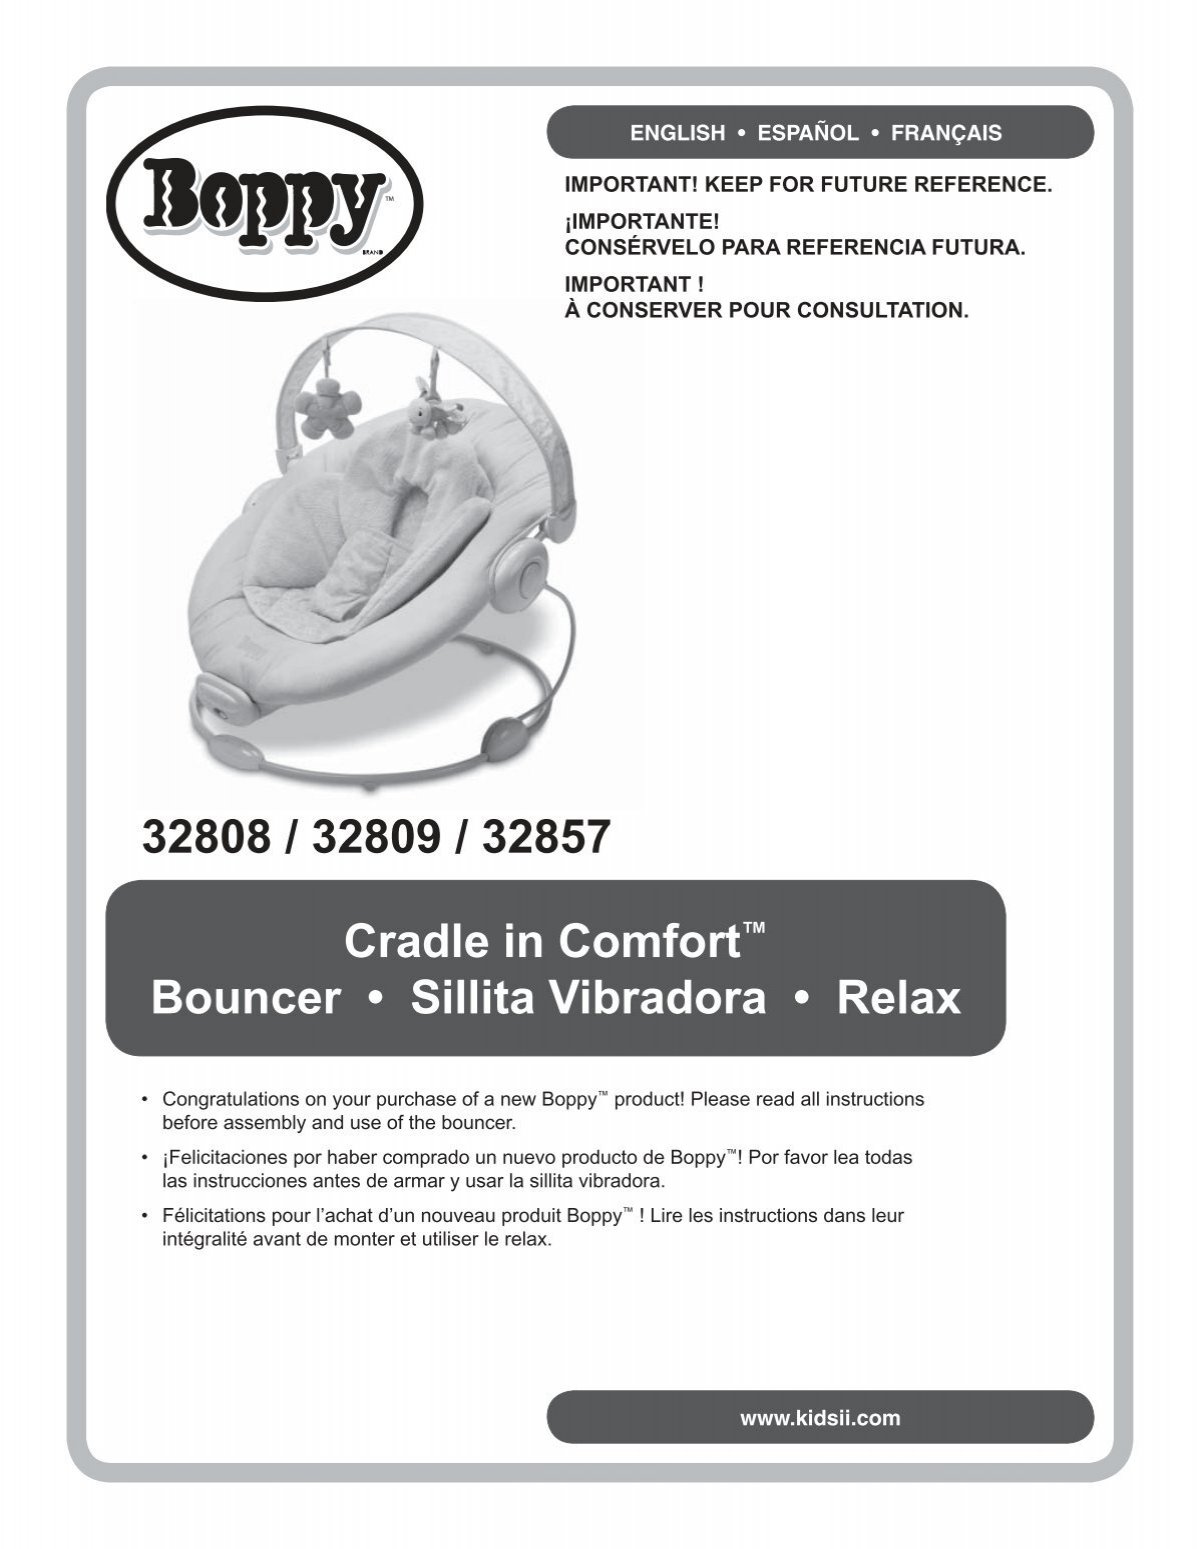 boppy cradle in comfort bouncer